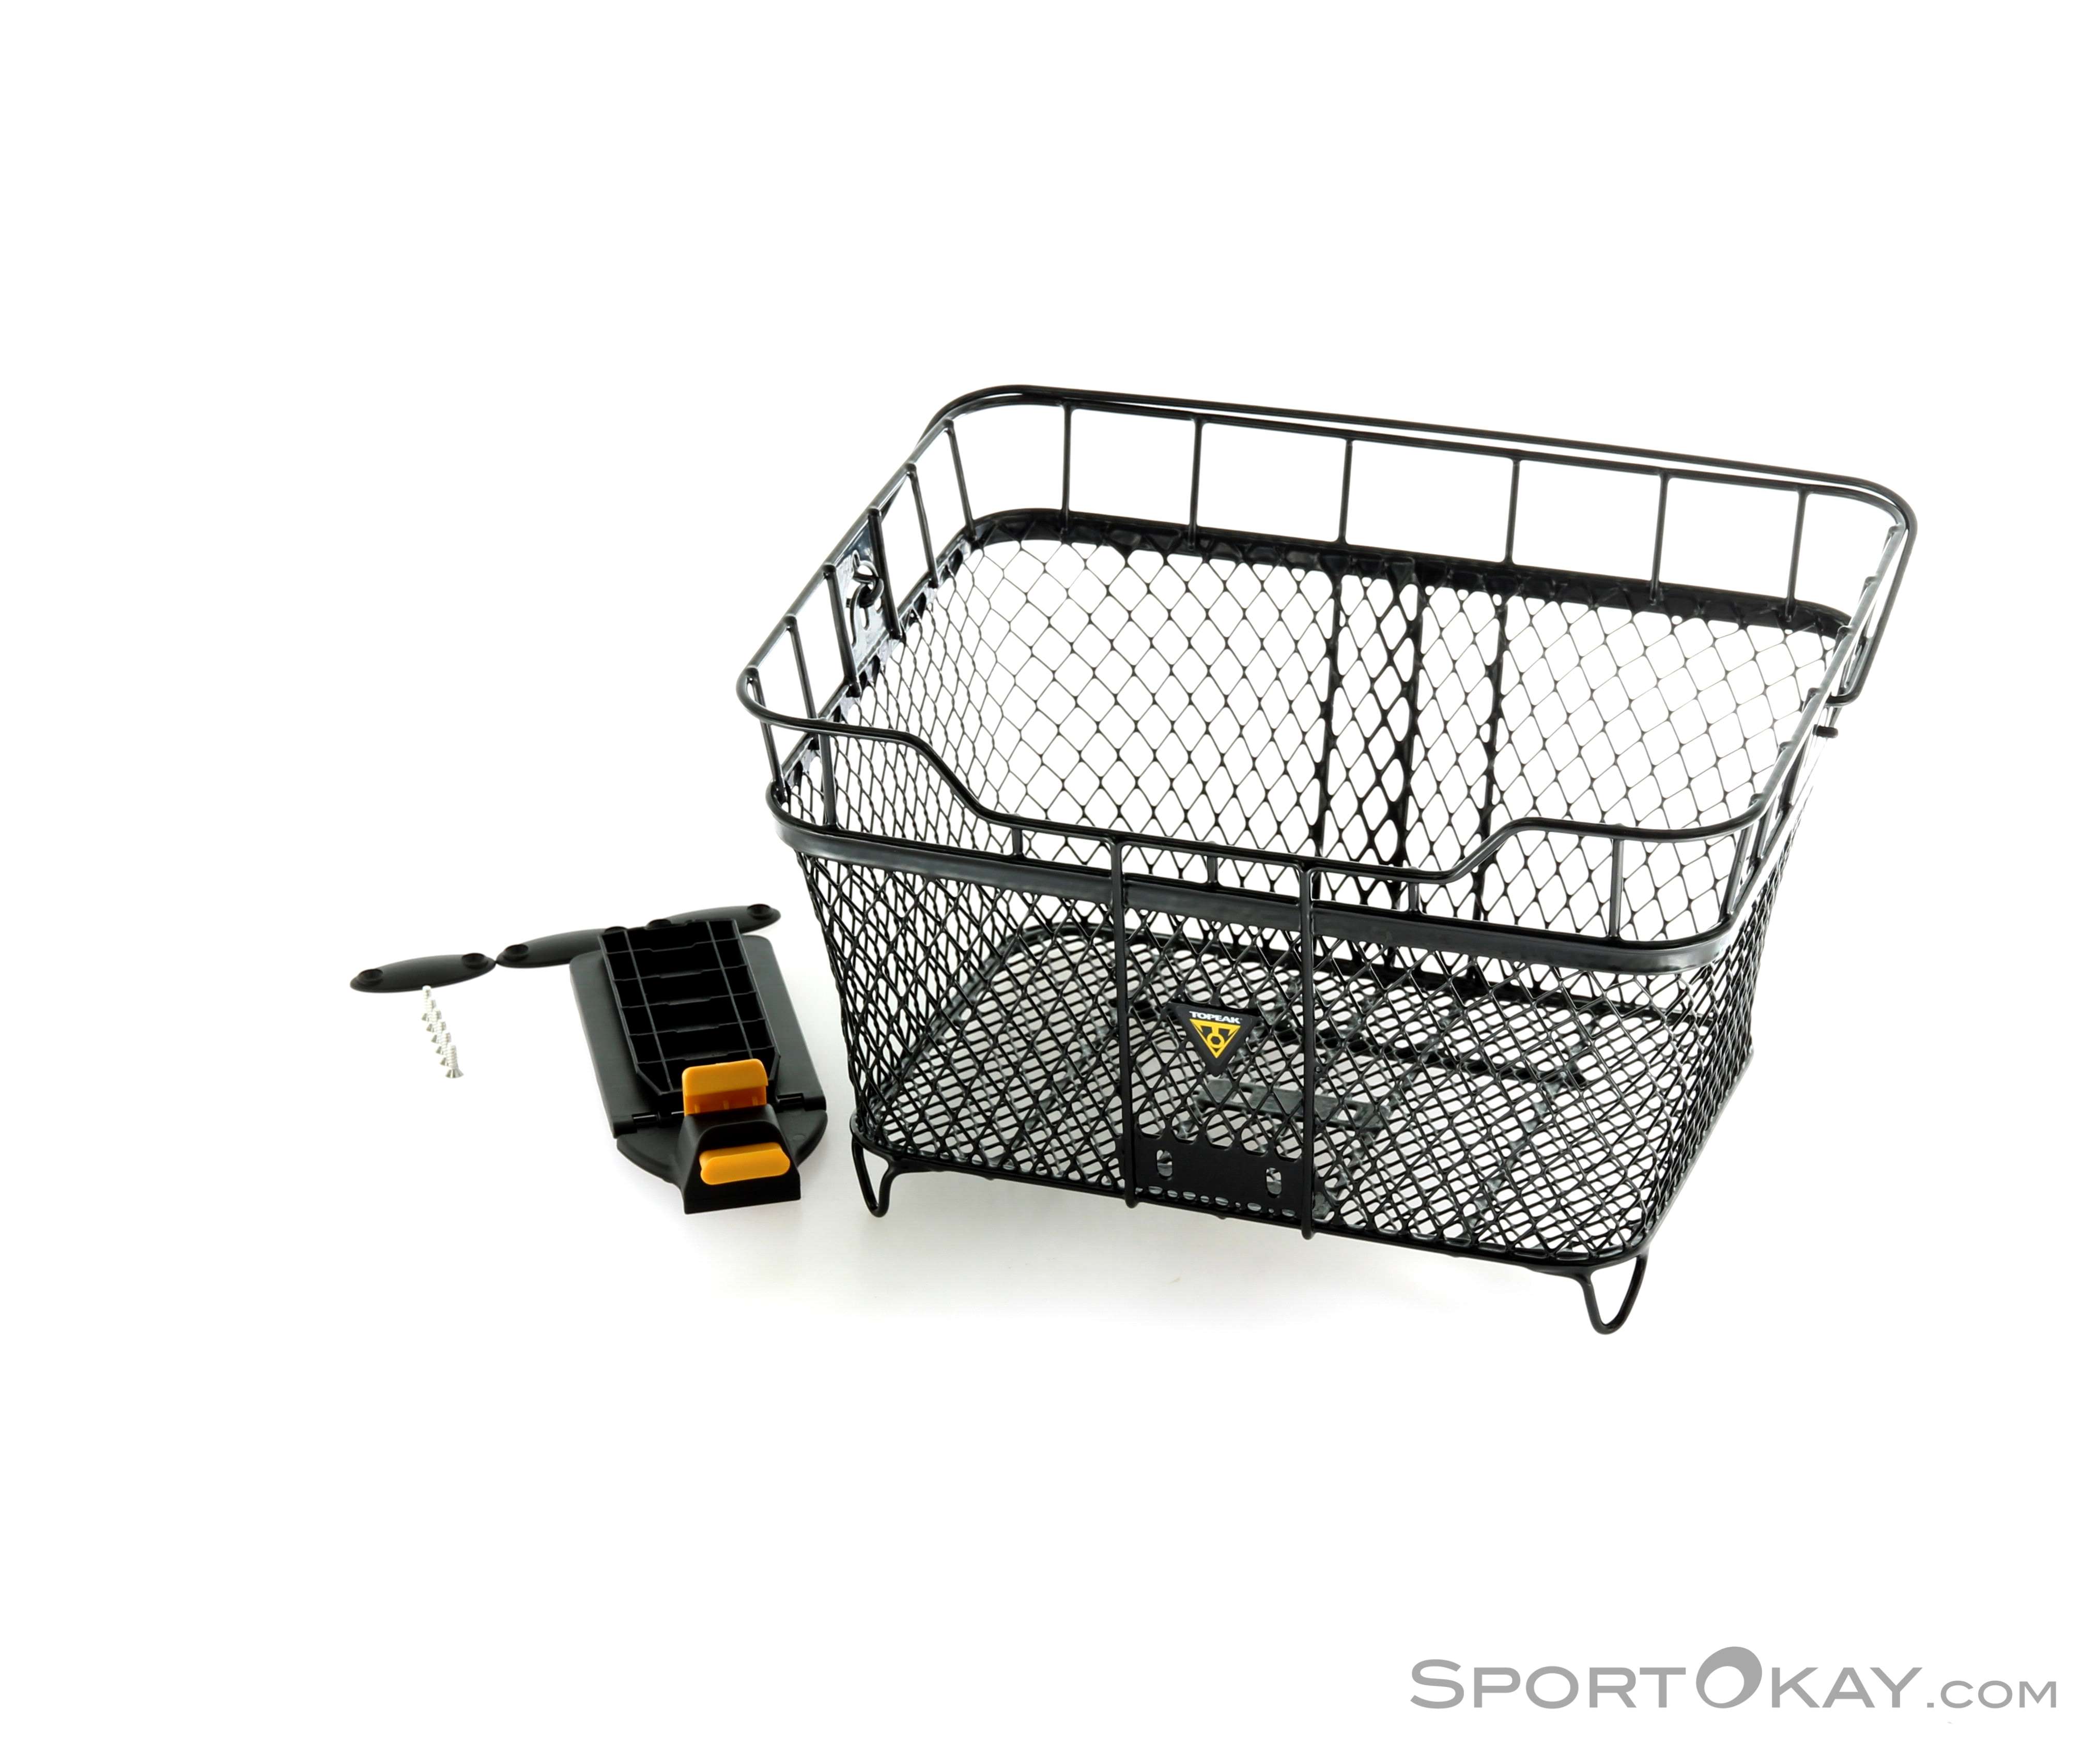 Topeak MTX Basket Rear Luggage Rack Basket - Bike Bag - Accessory - Bike -  All